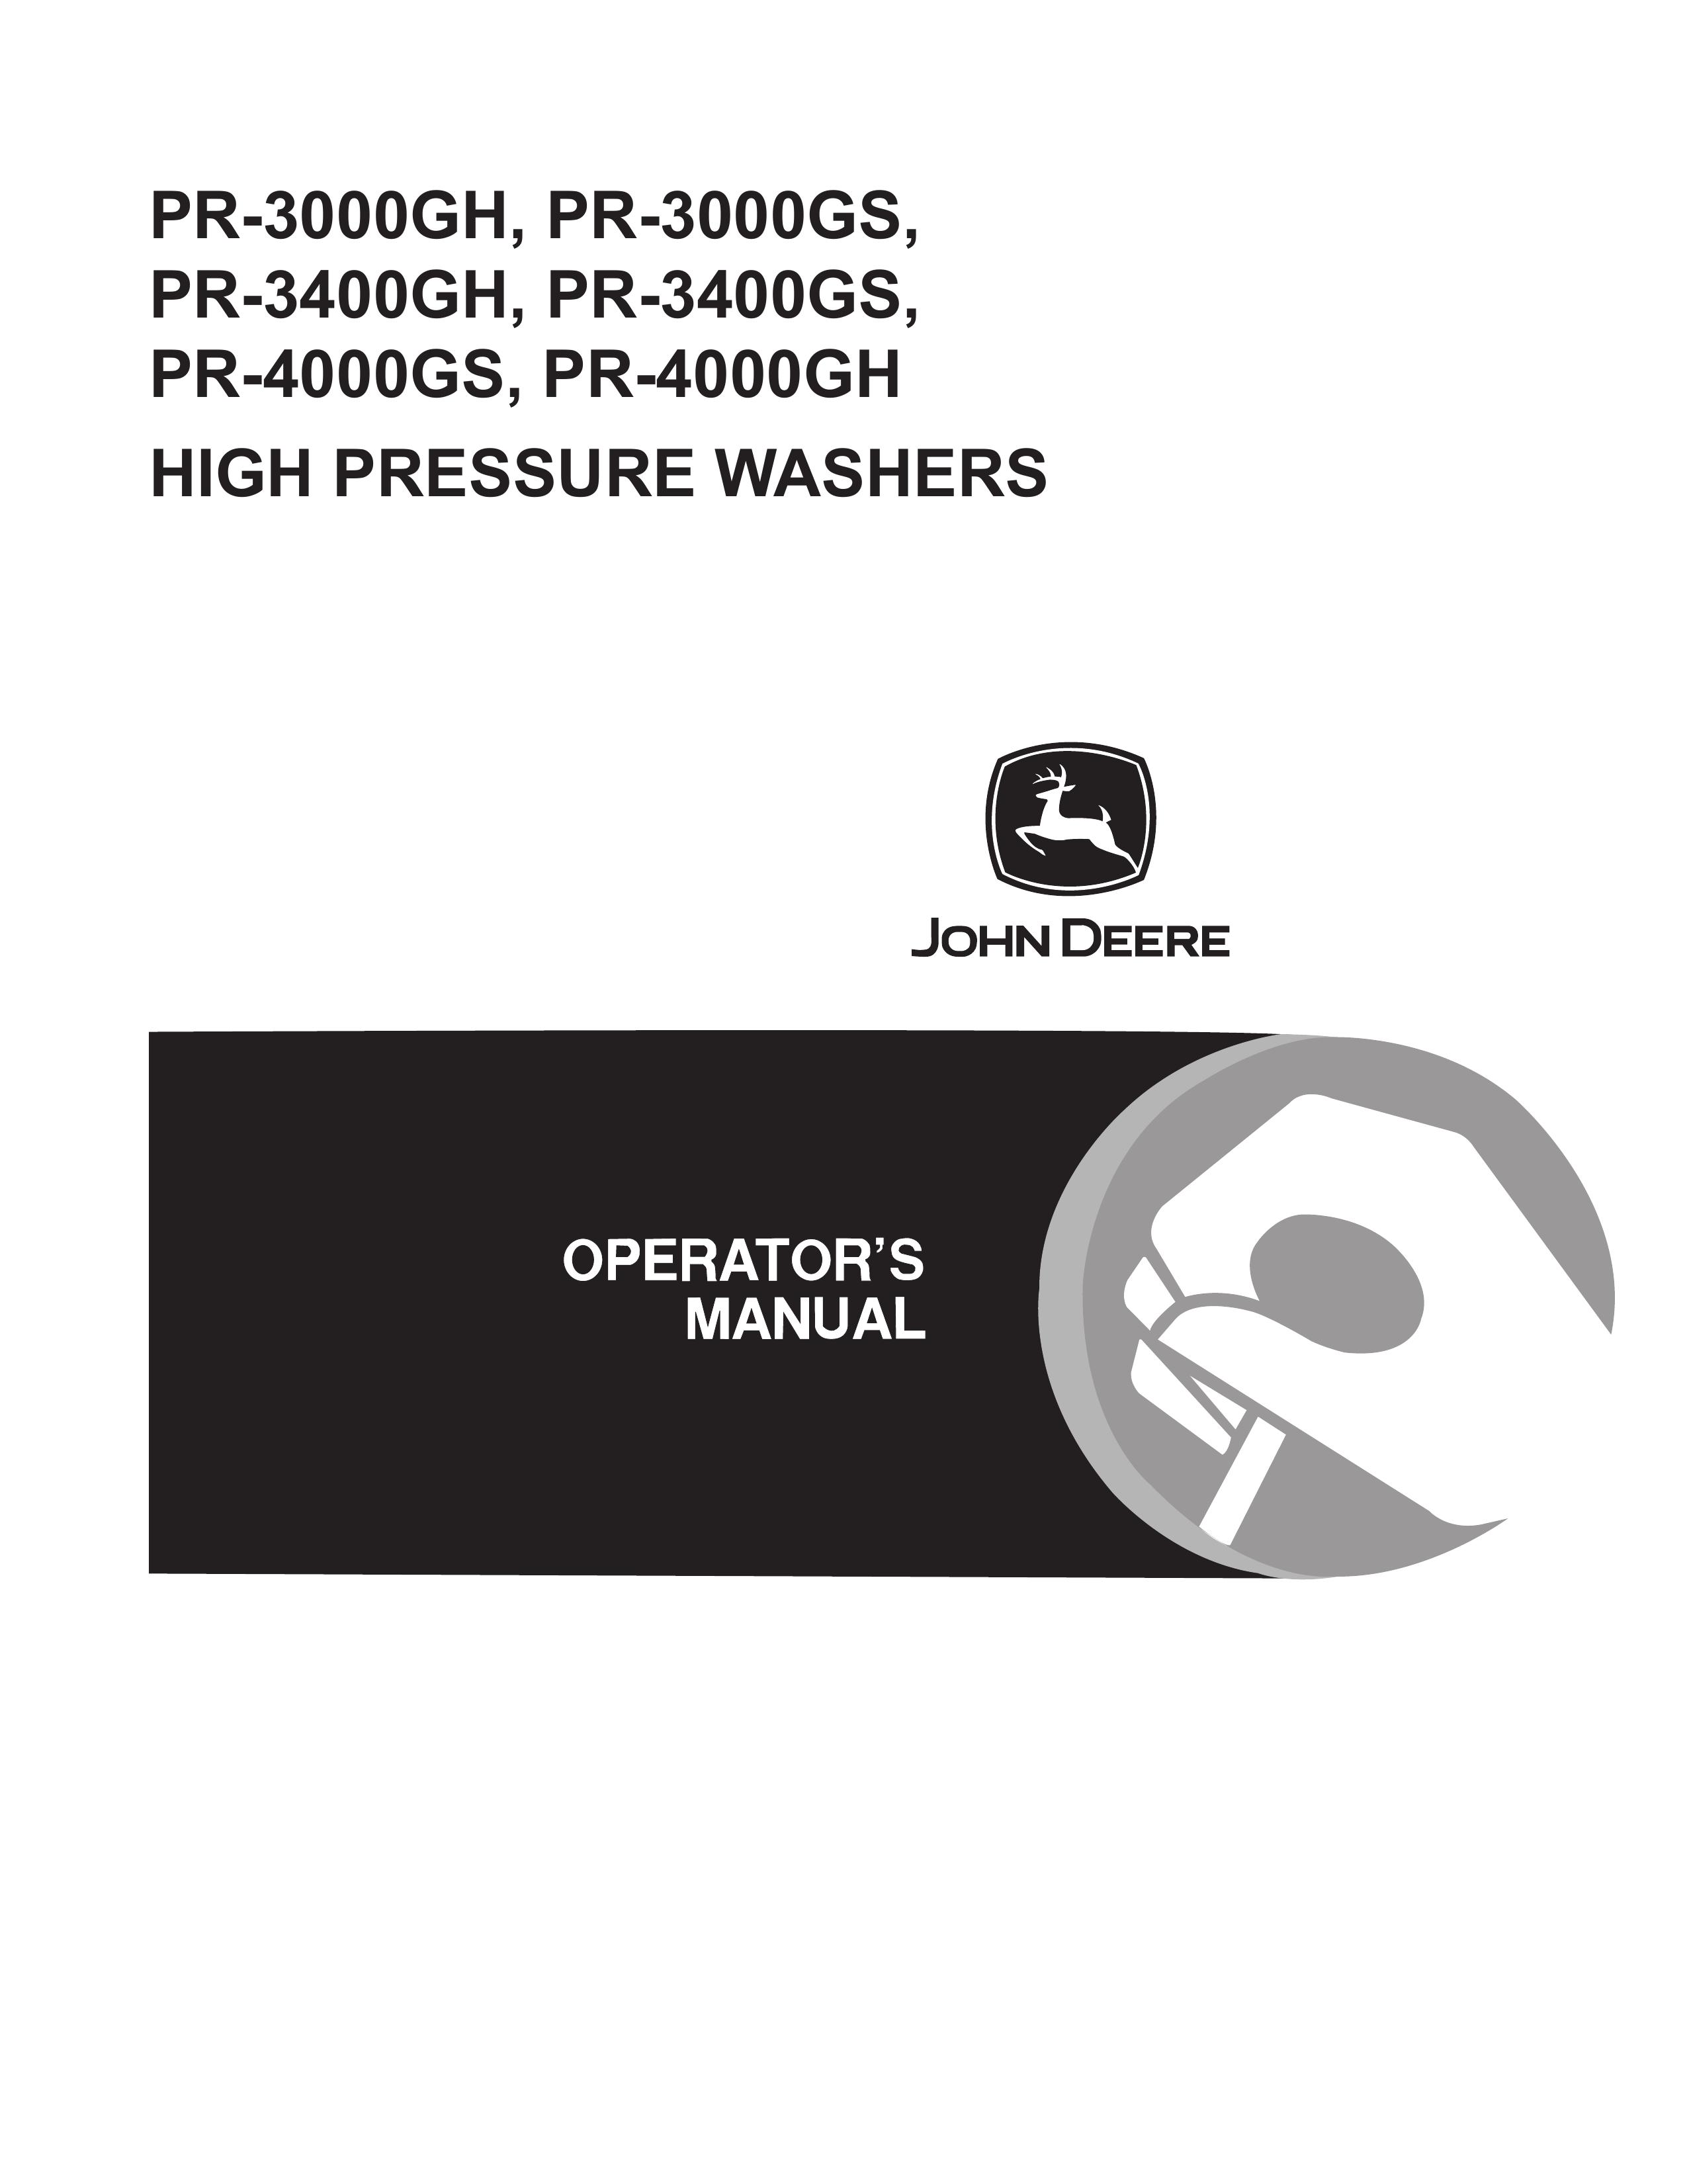 John Deere PR-3000GS Pressure Washer User Manual